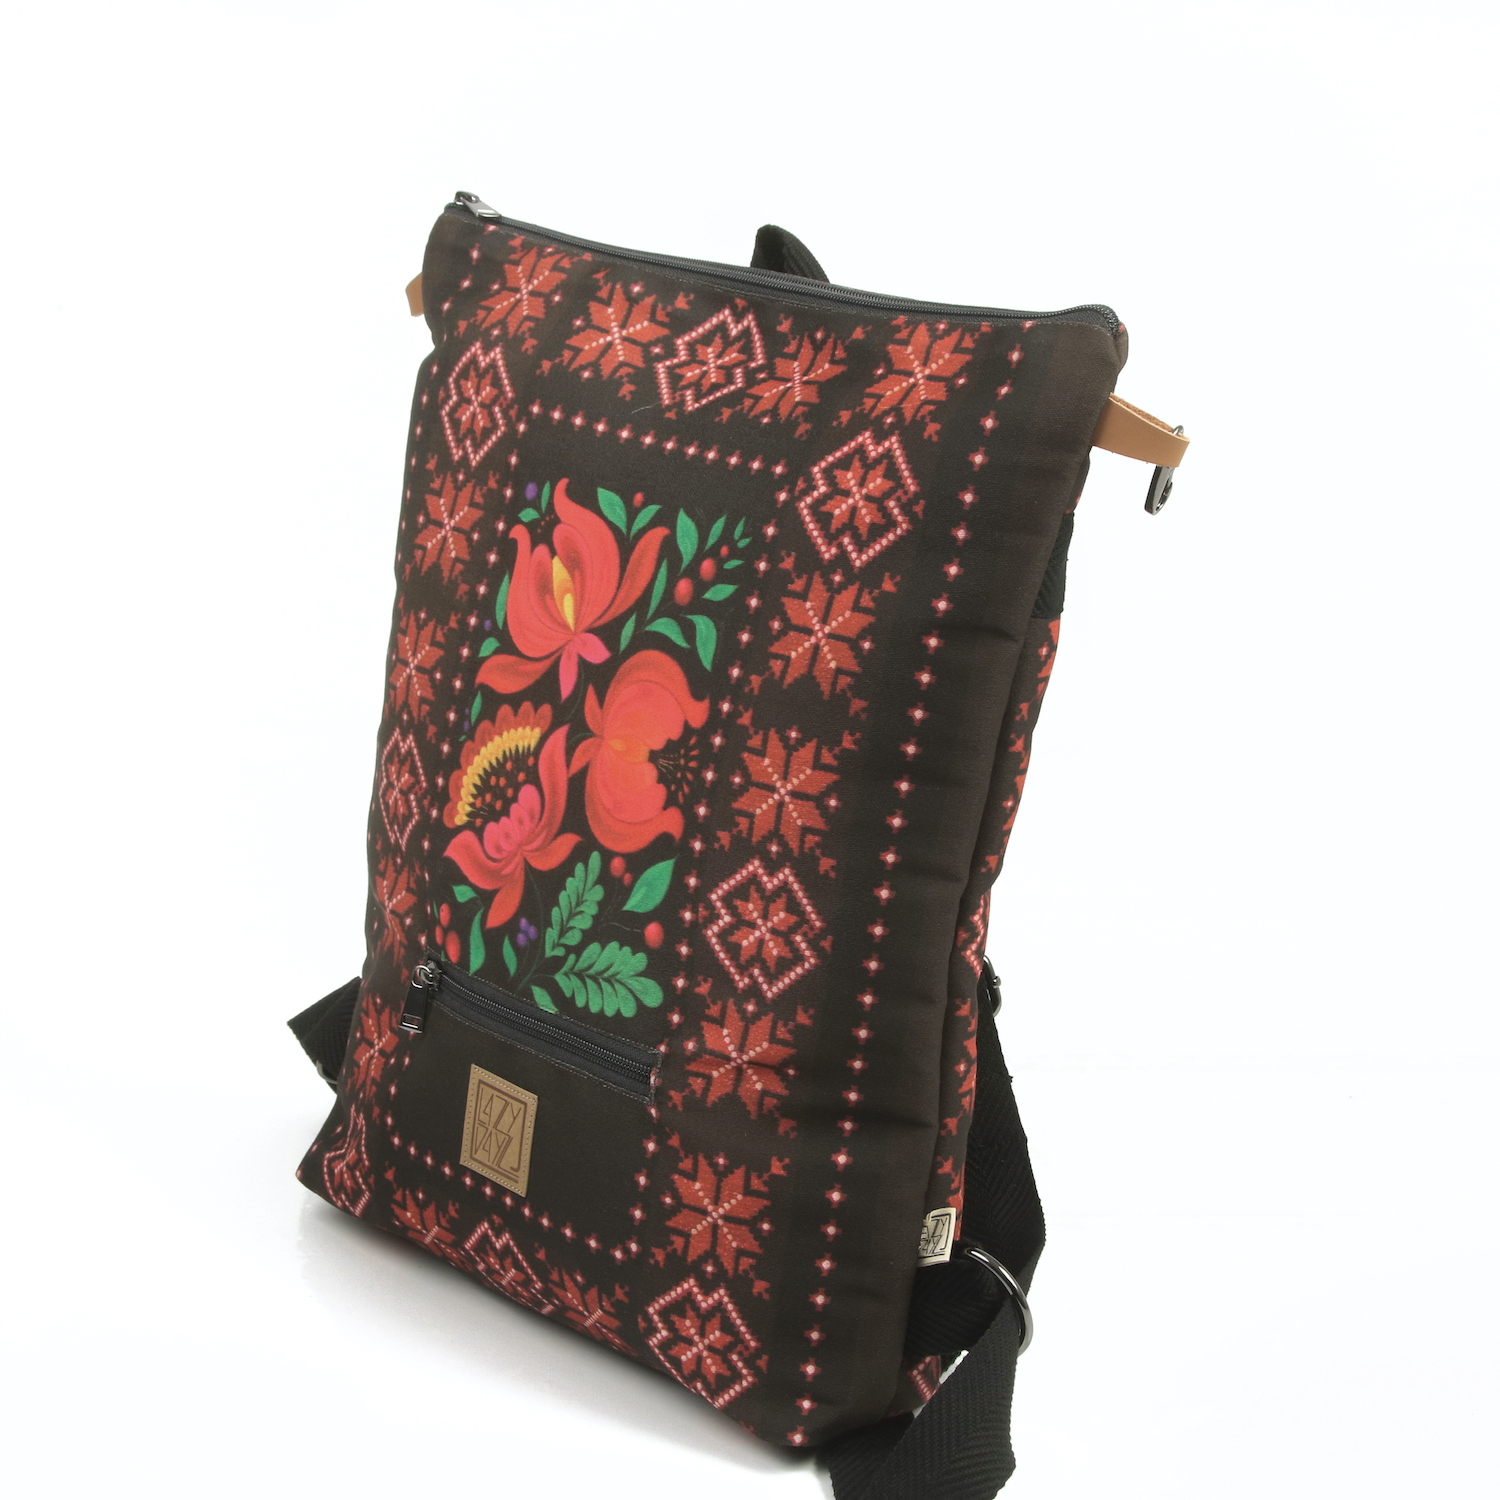 LazyDayz Designs Backpack γυναικείος σάκος πλάτης χειροποίητος bb0507b